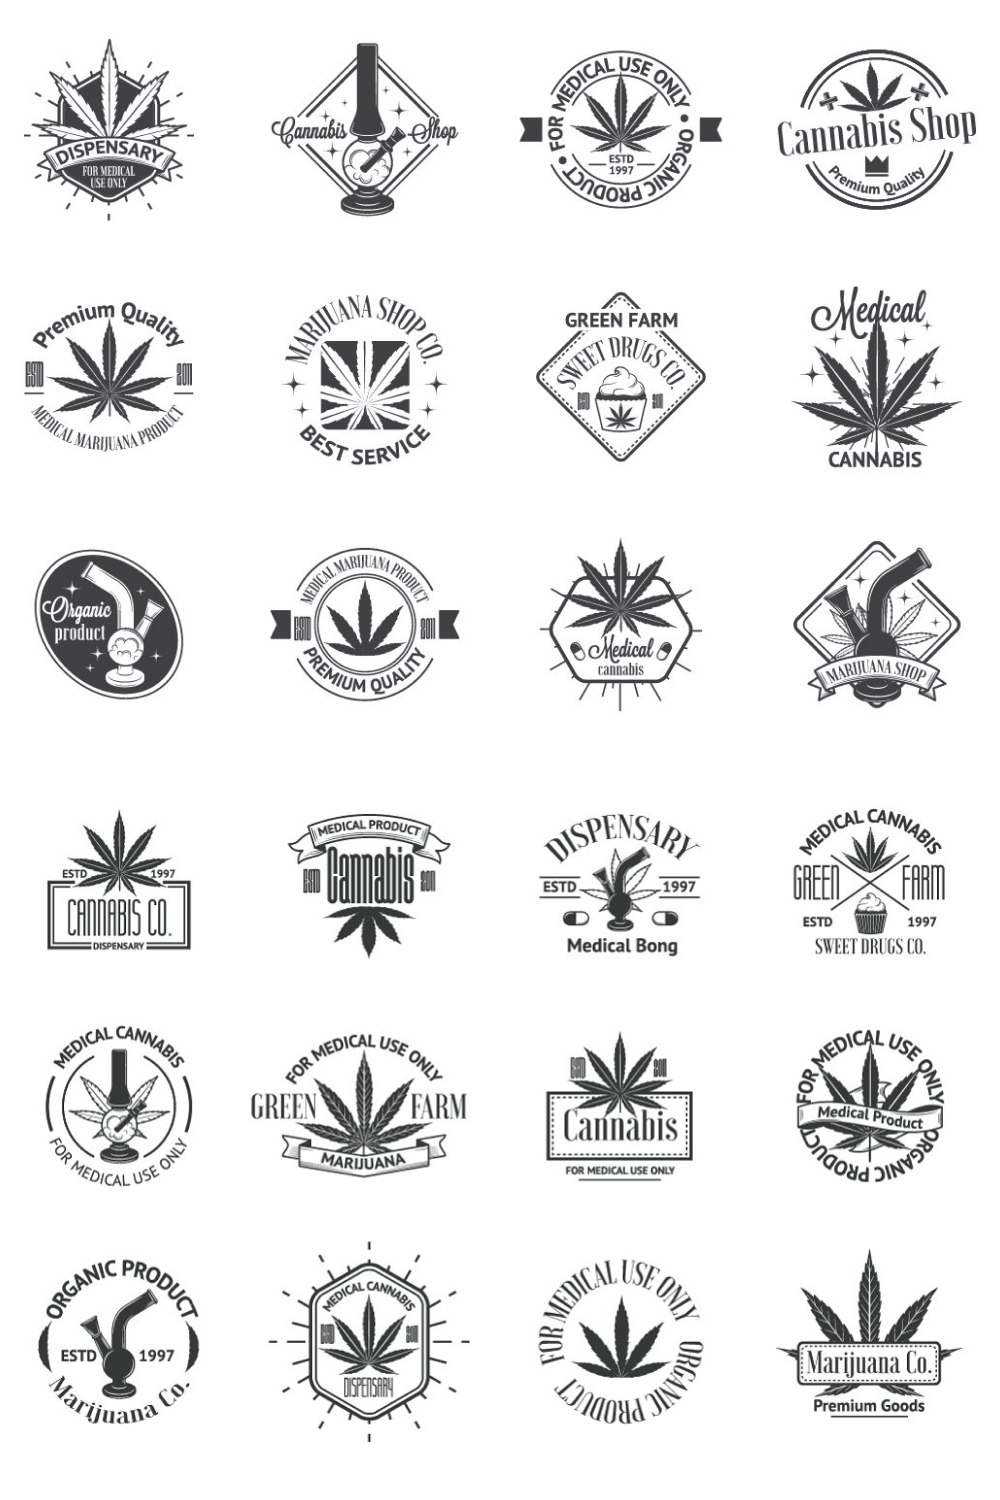 Marijuana logos bundle.